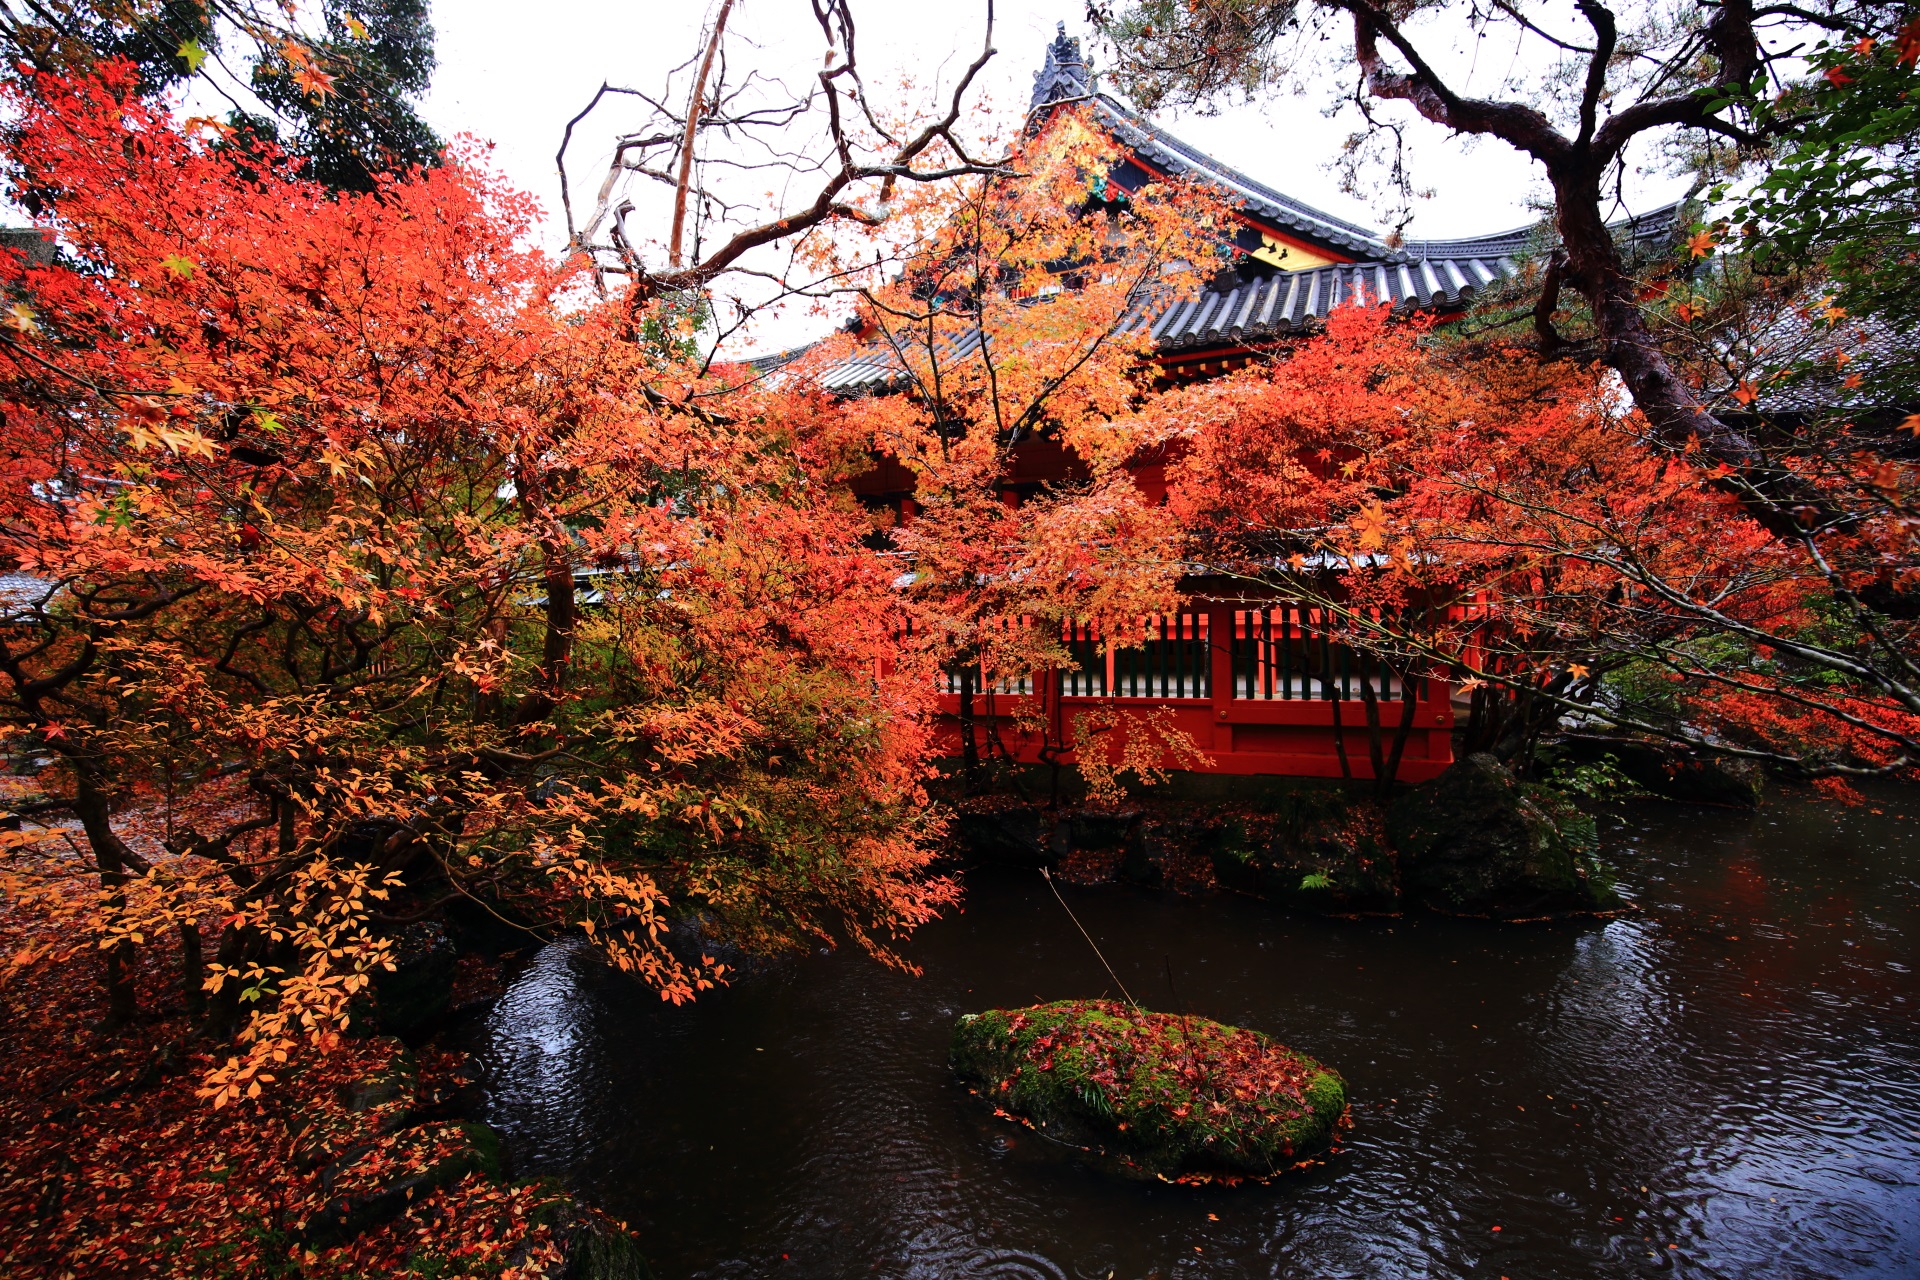 毘沙門堂の本堂と水辺を彩る鮮やかな紅葉